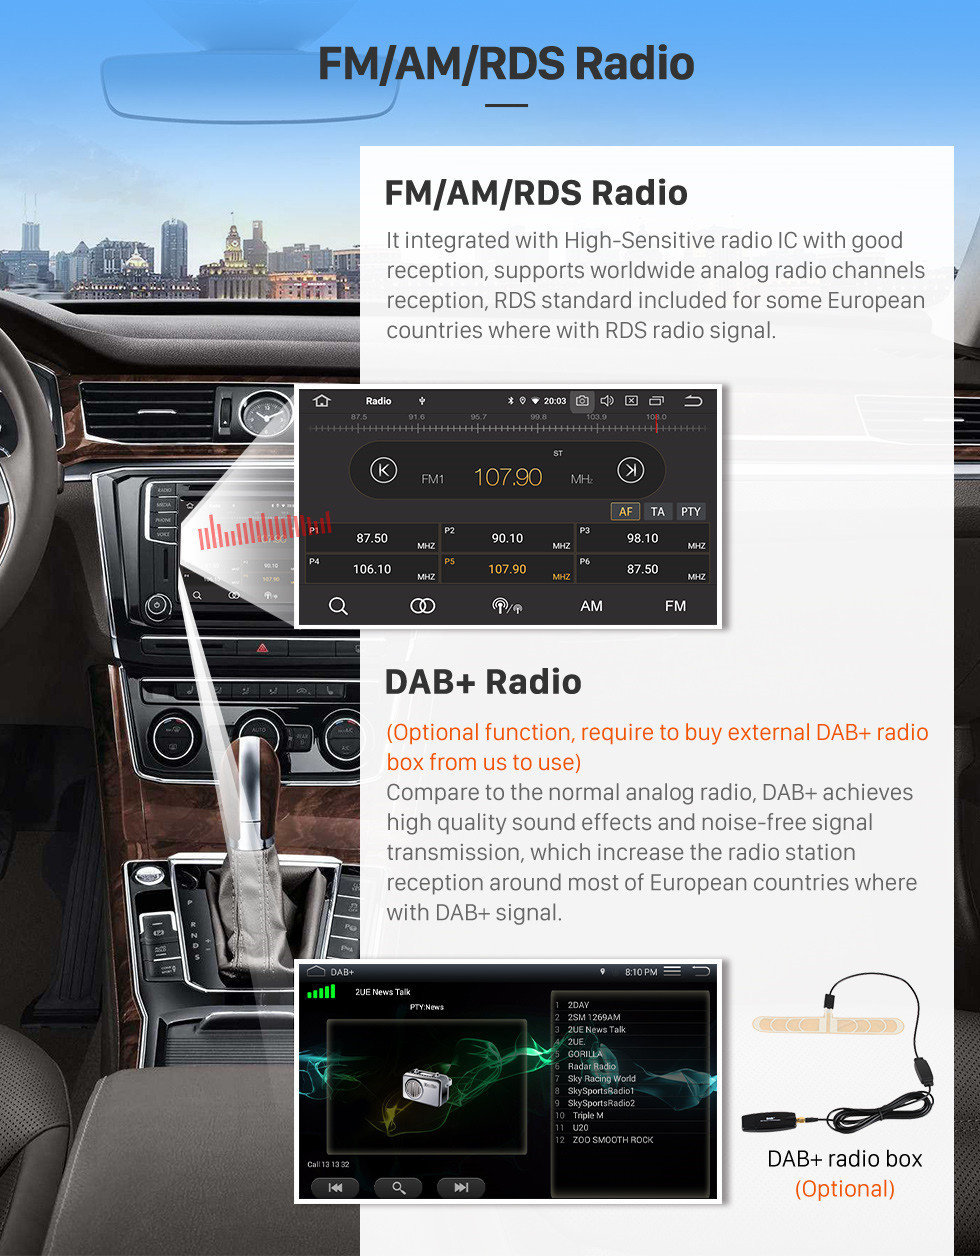 Seicane 2008-2013 Honda City Auto A / C Android 11.0 10.1 pulgadas Radio de navegación GPS Bluetooth HD Pantalla táctil USB Carplay compatible con DVR SWC